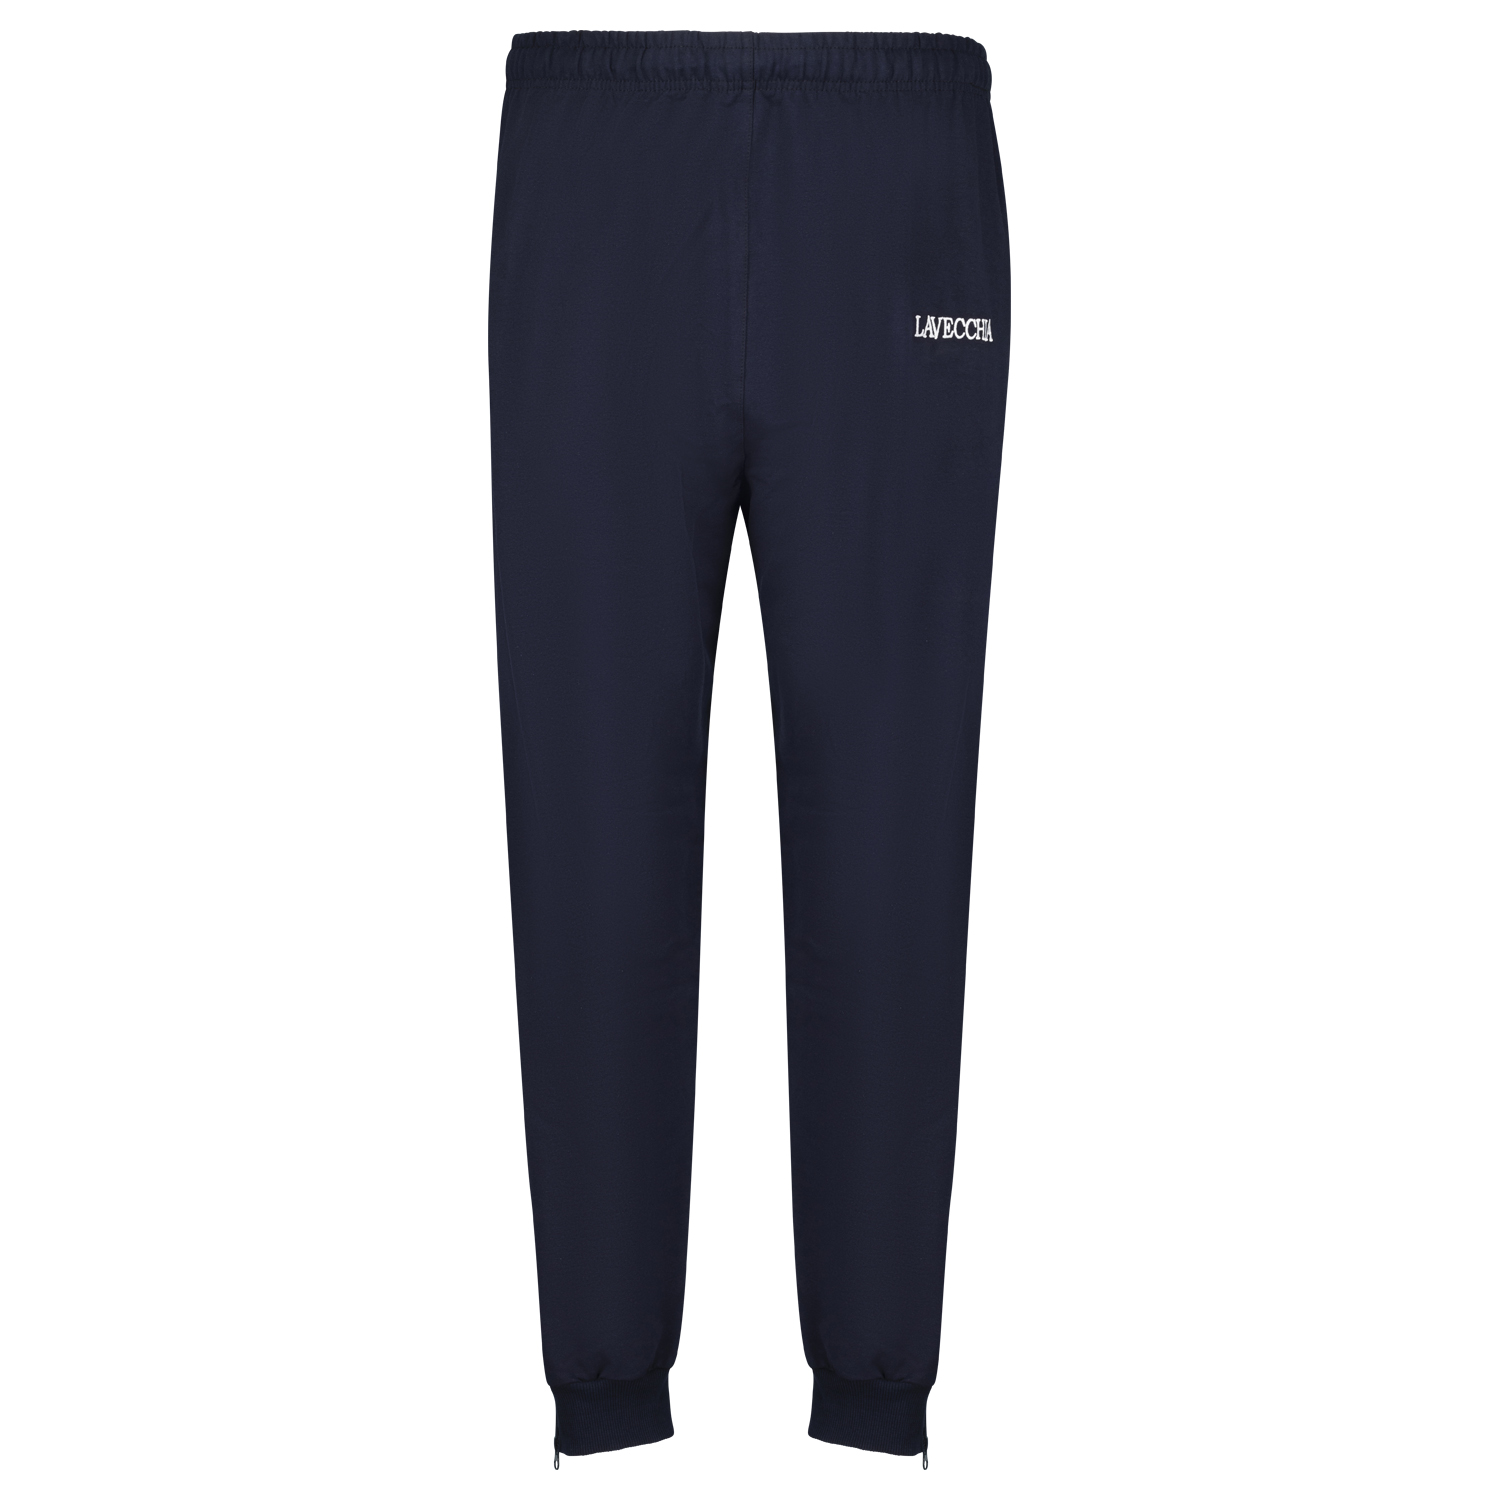 Pantalon de jogging bleu de Lavecchia grandes tailles jusqu'au 8XL